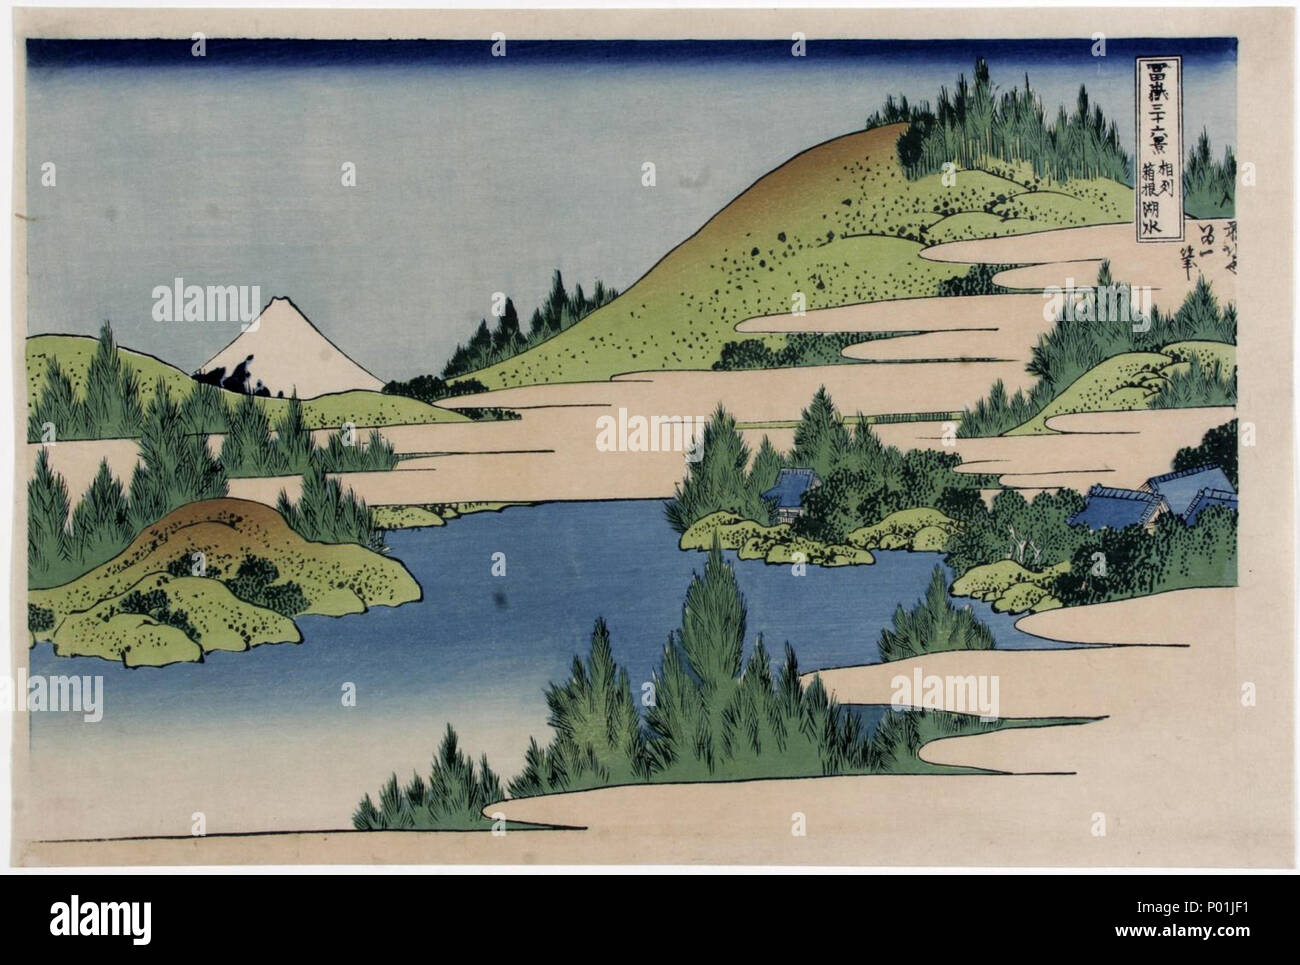 . Englisch: Katsushika Hokusai (1760-1849), der See von hokone (1829-1833). Sammlung japanischer Drucke von Centre Céramique, Maastricht, Niederlande. 25. November 2014. Katsushika Hokusai (1760-1849) 13 Katsushika Hokusai (1760-1849), het meer van Hokone (1829-33) Stockfoto